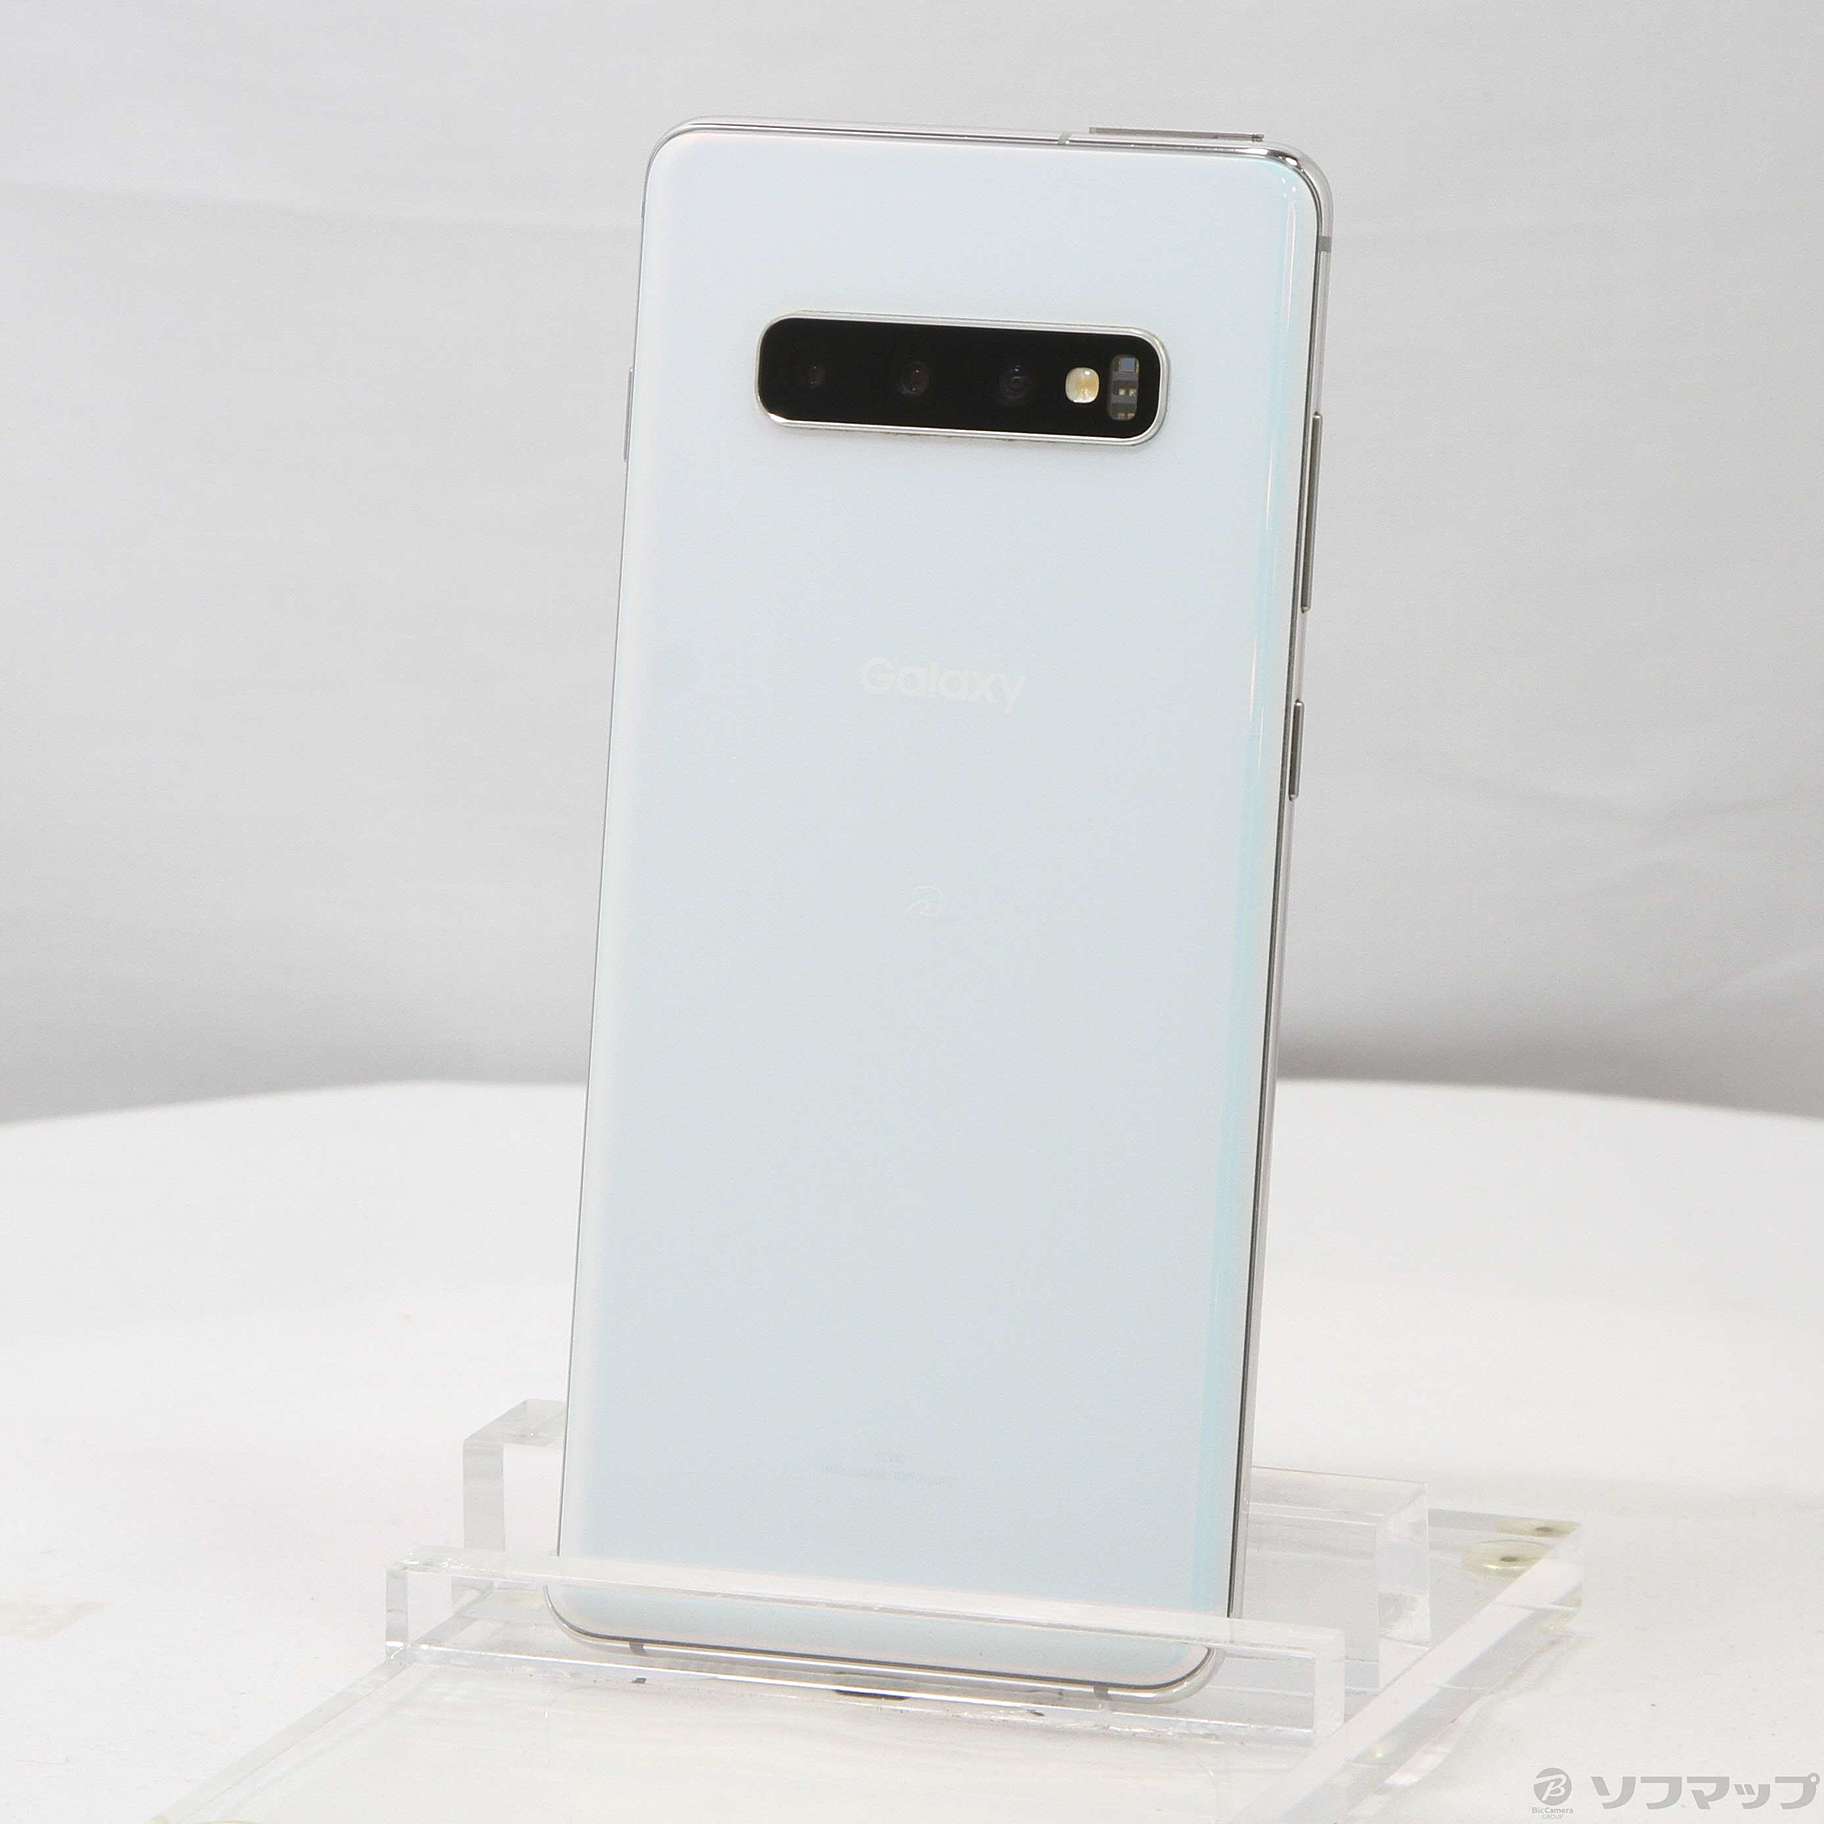 Galaxy S10 Prism White 128 GB SIMフリー購入したキャリア